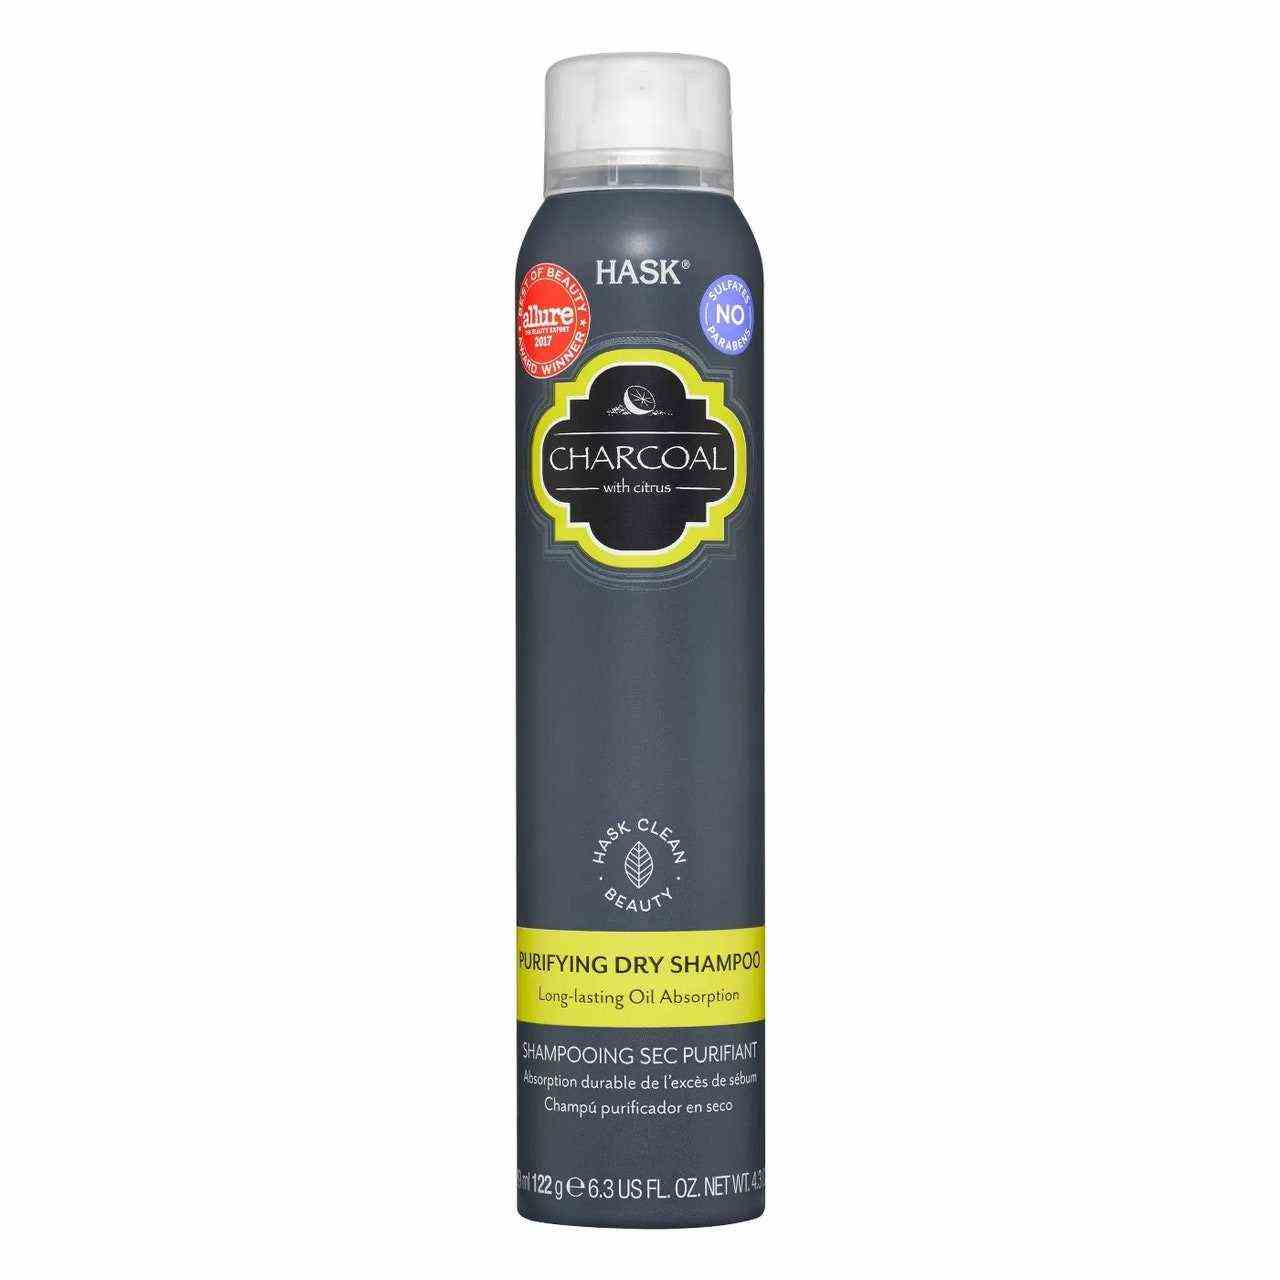 Hask Charcoal Purifying Dry Shampoo Flasche auf weißem Hintergrund